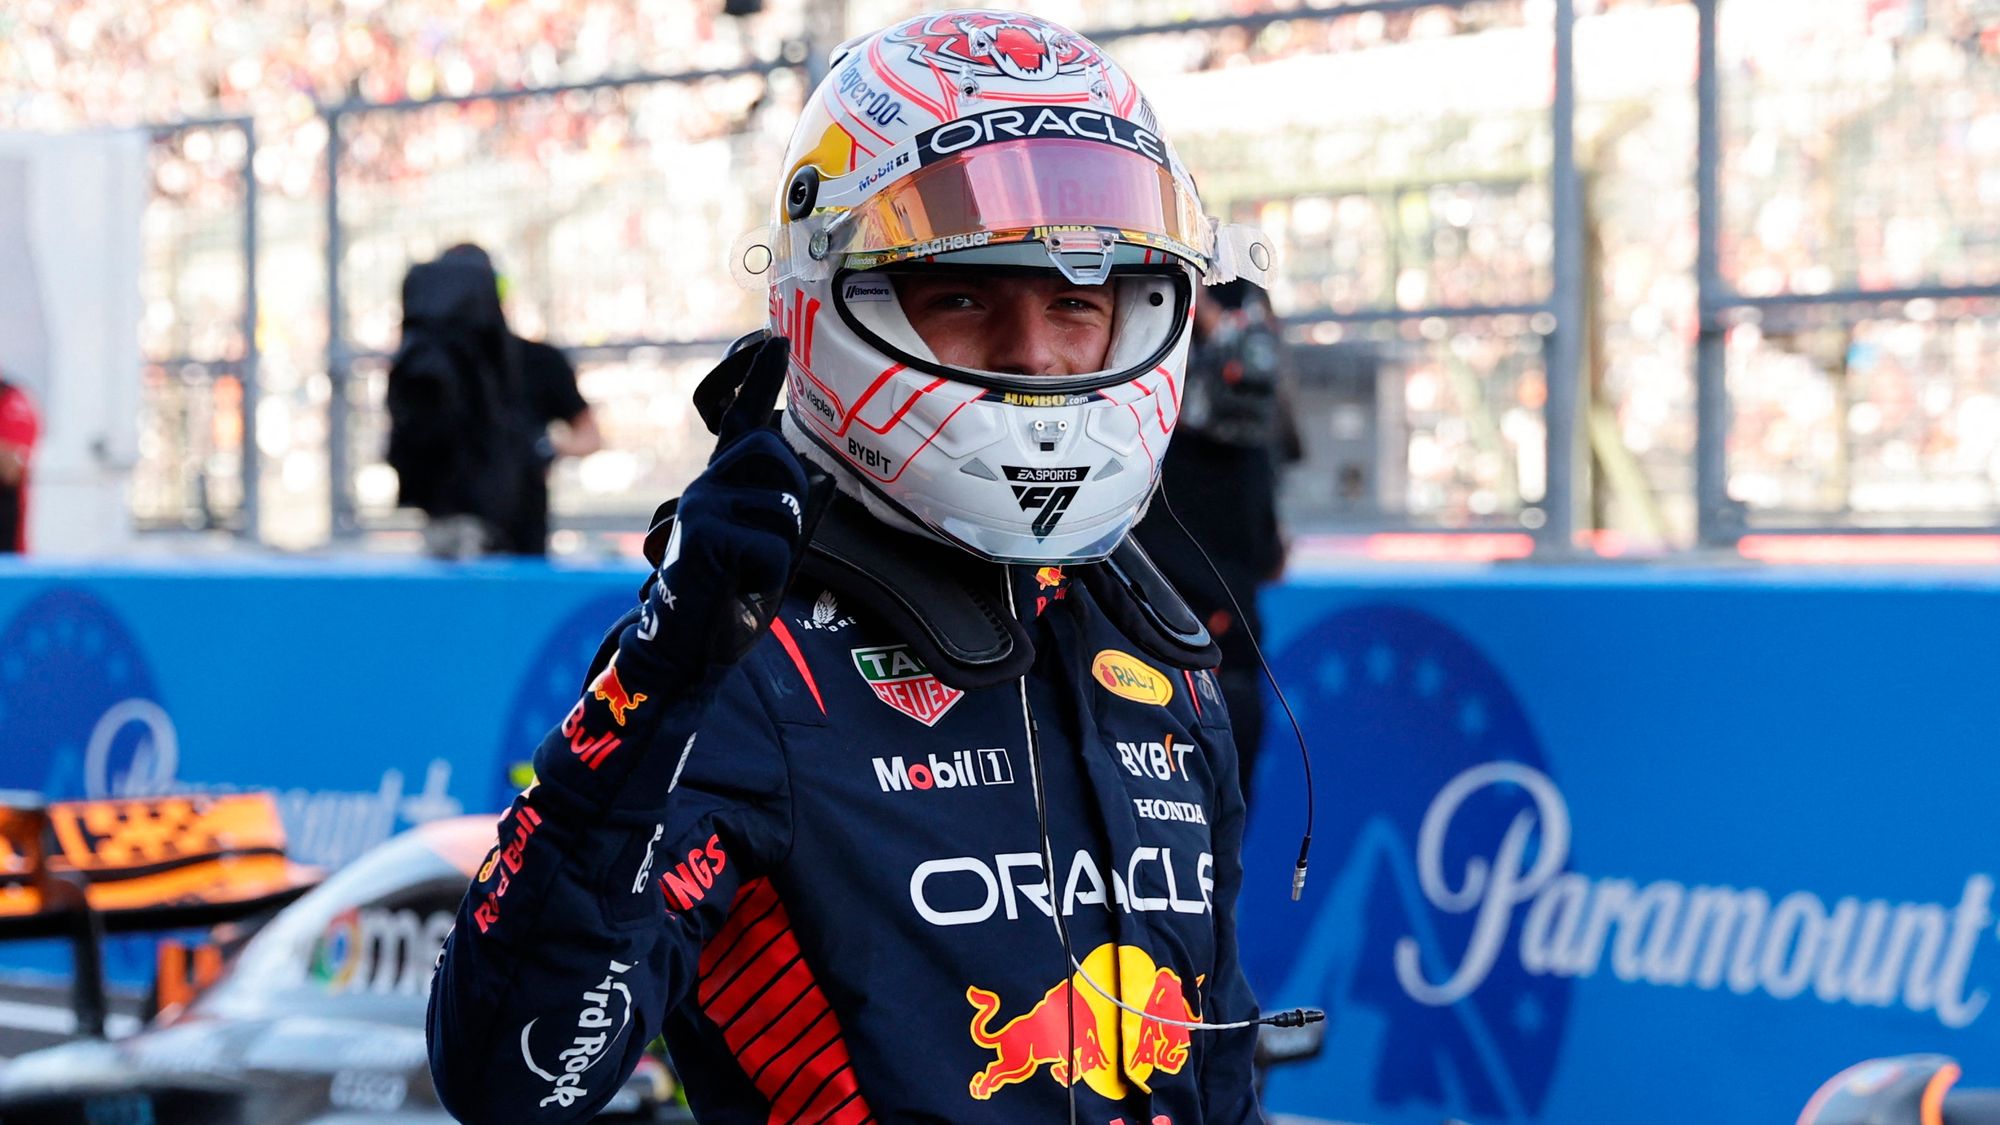 Despertaron los toros: Max Verstappen ganó la 'pole position' en Japón